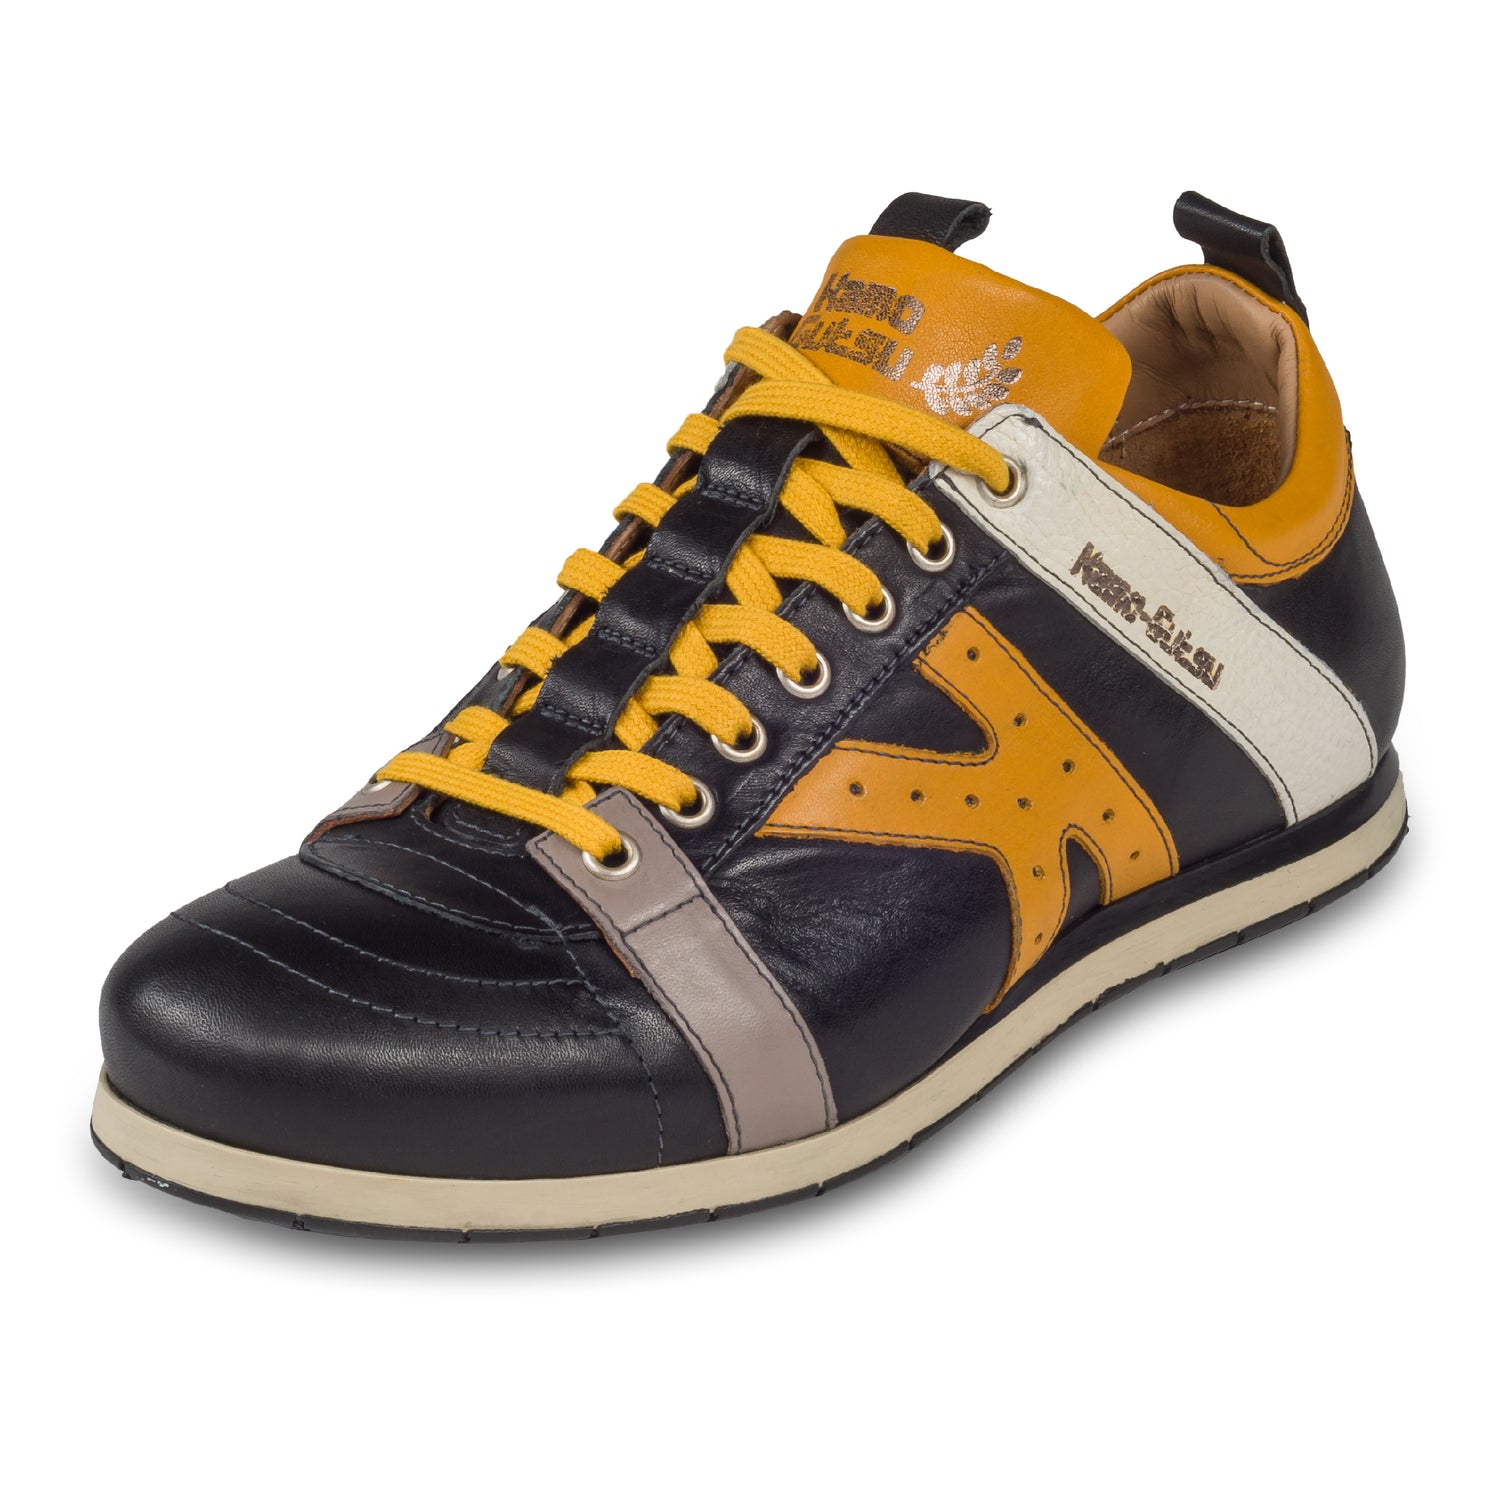 KAMO-GUTSU Italienische Leder Sneaker, schwarz mit gelb und weiß (TIFO-042 nero girasole). Handgefertigt in Italien. Schräge Ansicht linker Schuh.